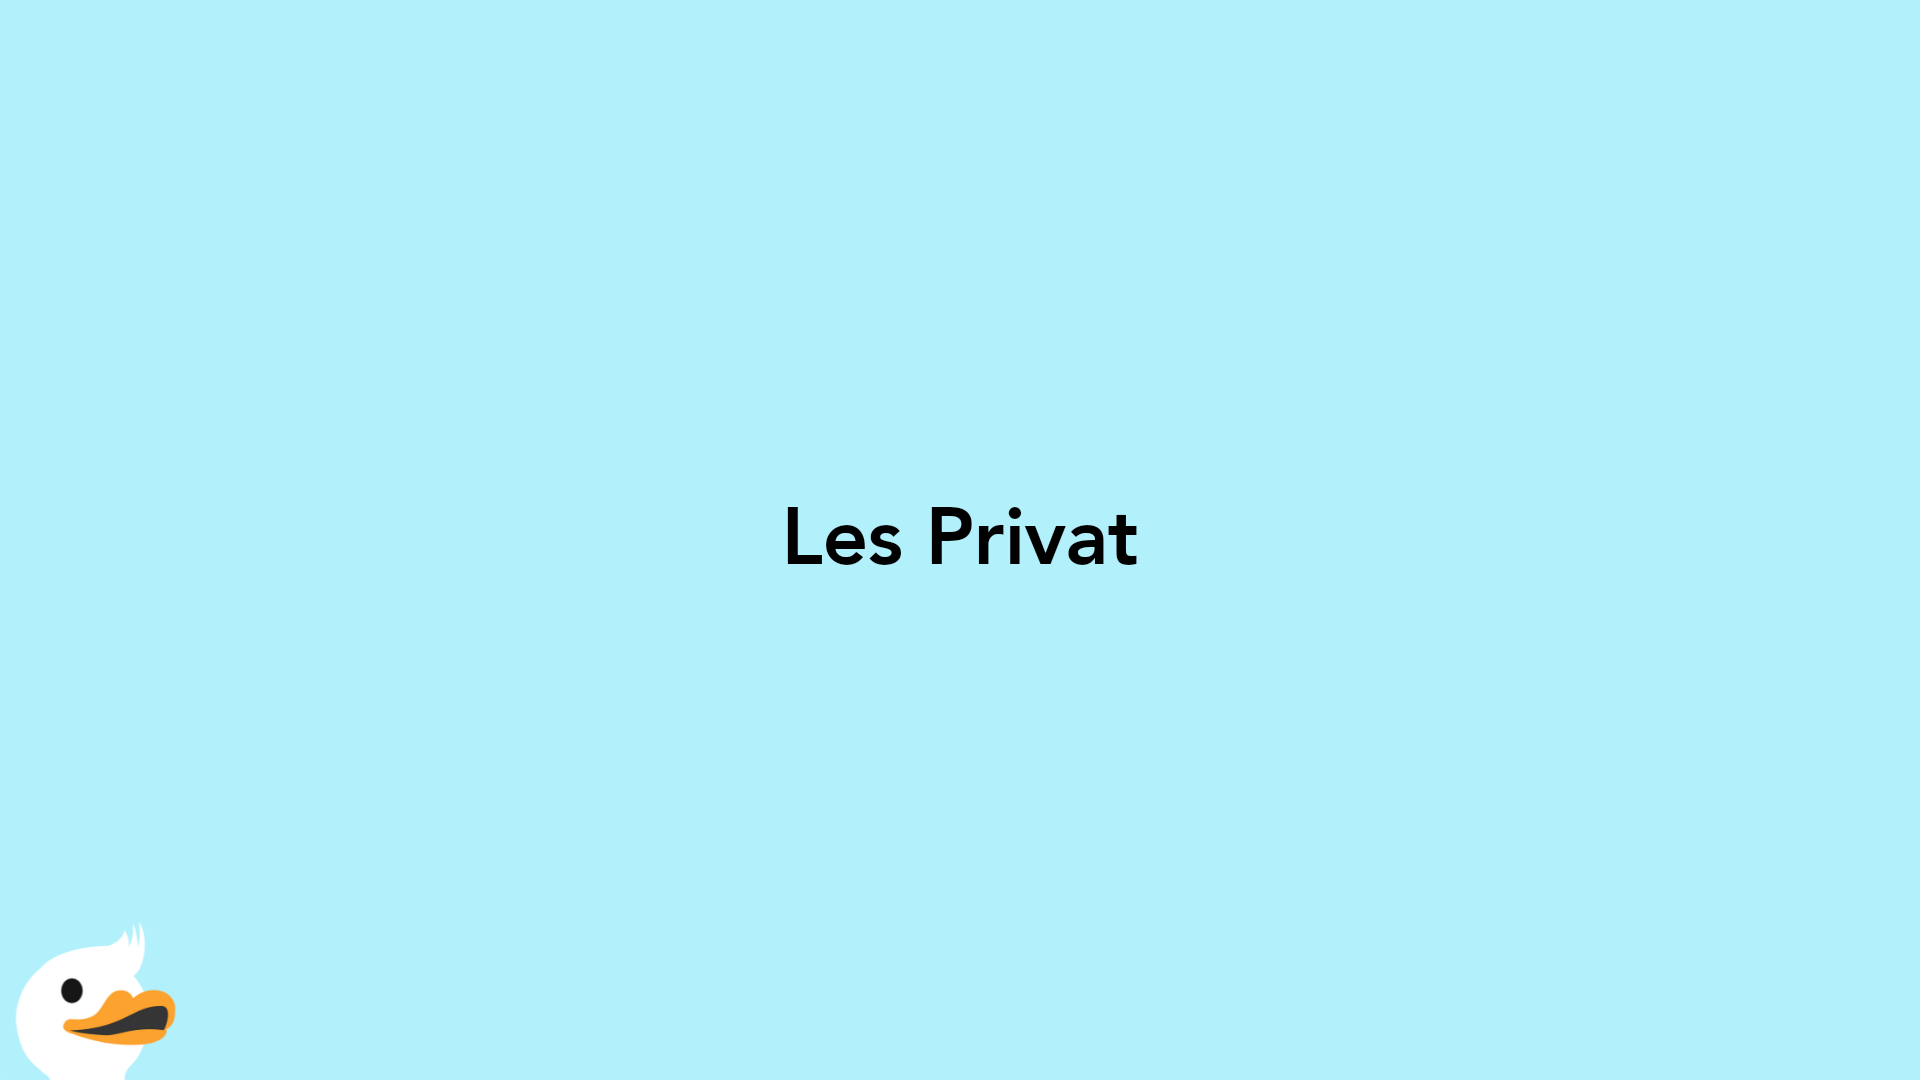 Les Privat